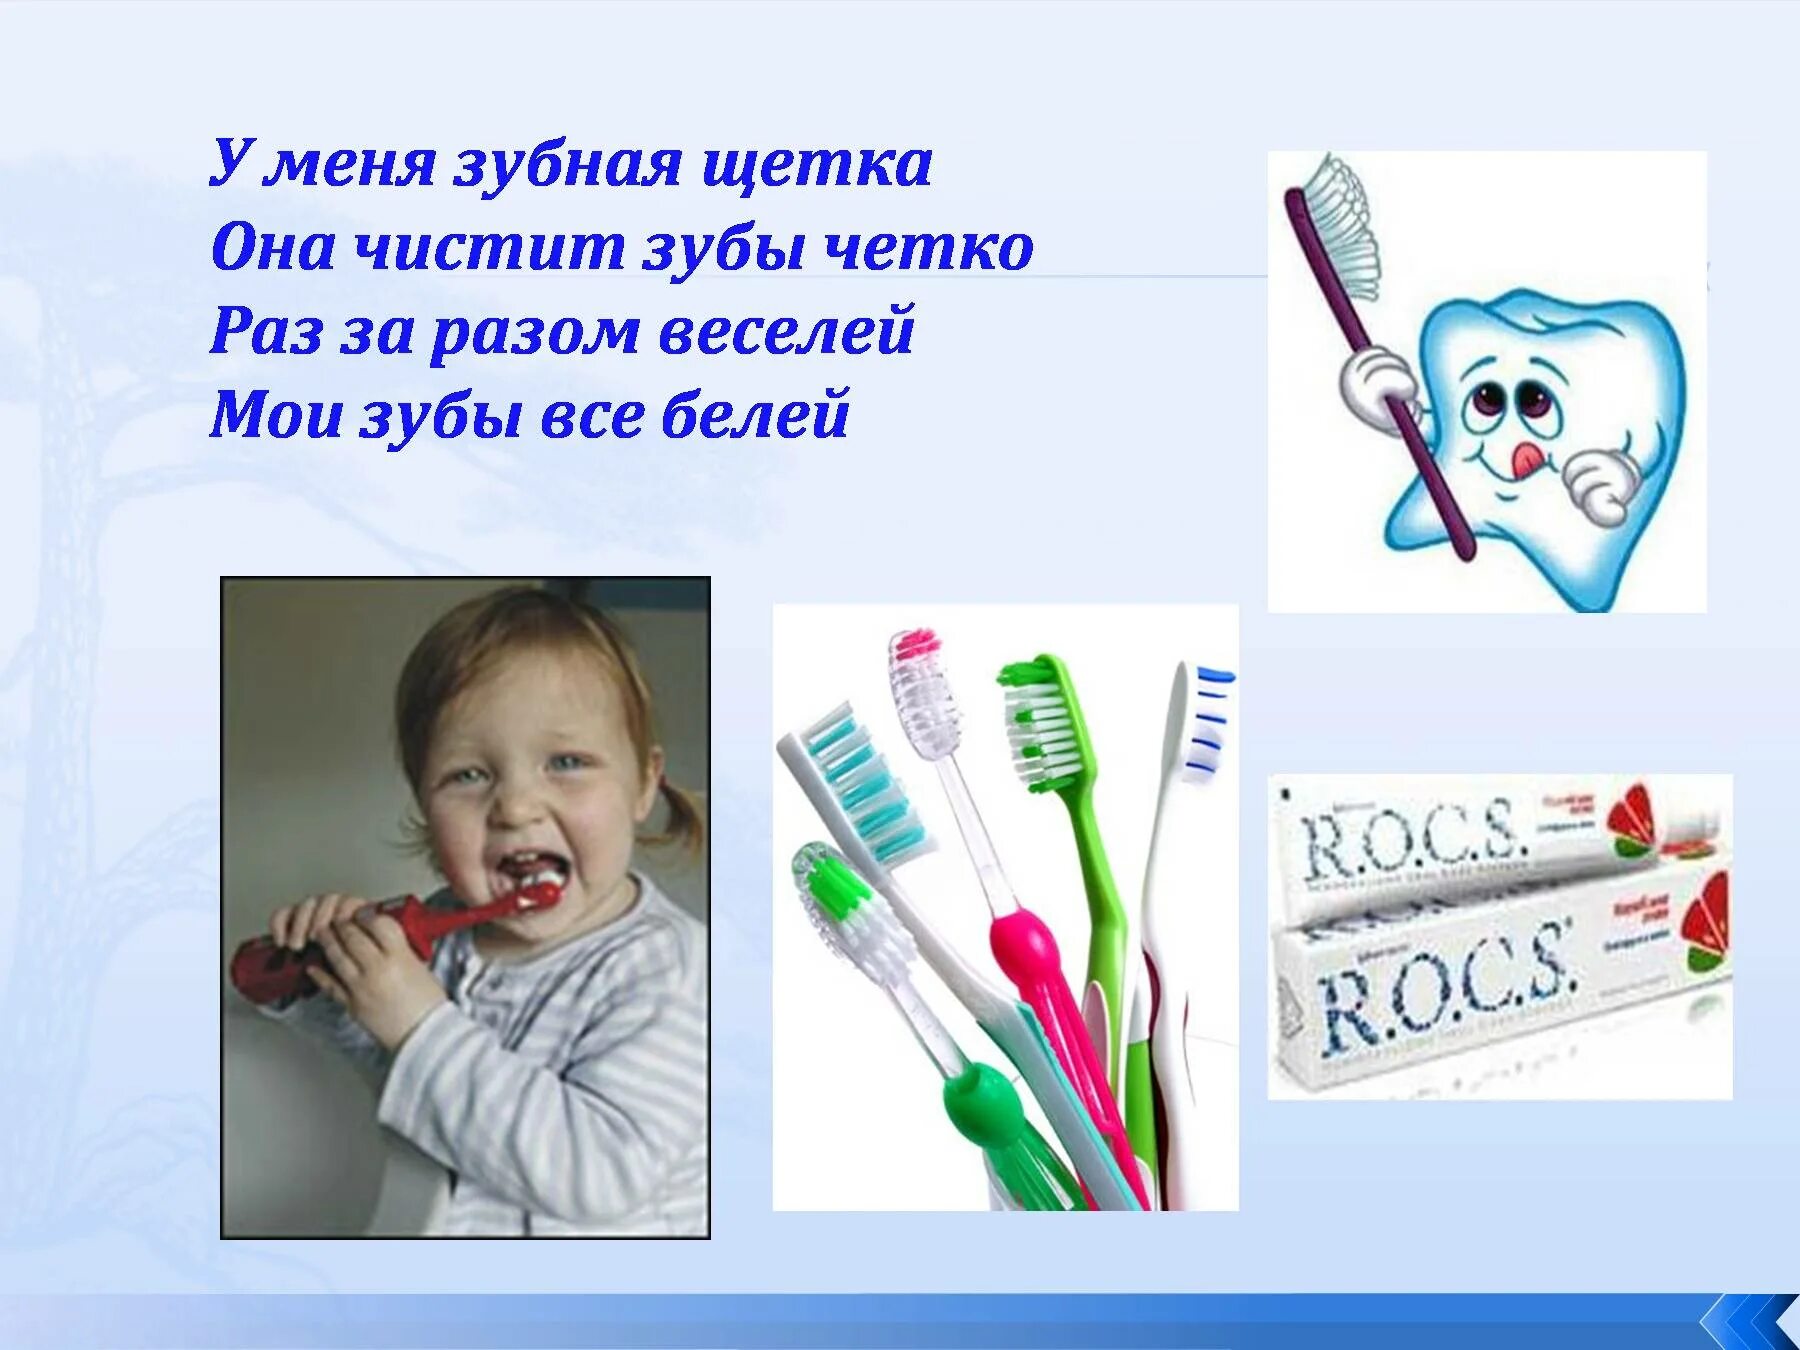 Зубная щетка для презентации. Зуб с зубной щеткой. Стихотворение про зубную щетку. Стих про зубную щетку для детей. Сказки чистить зубы